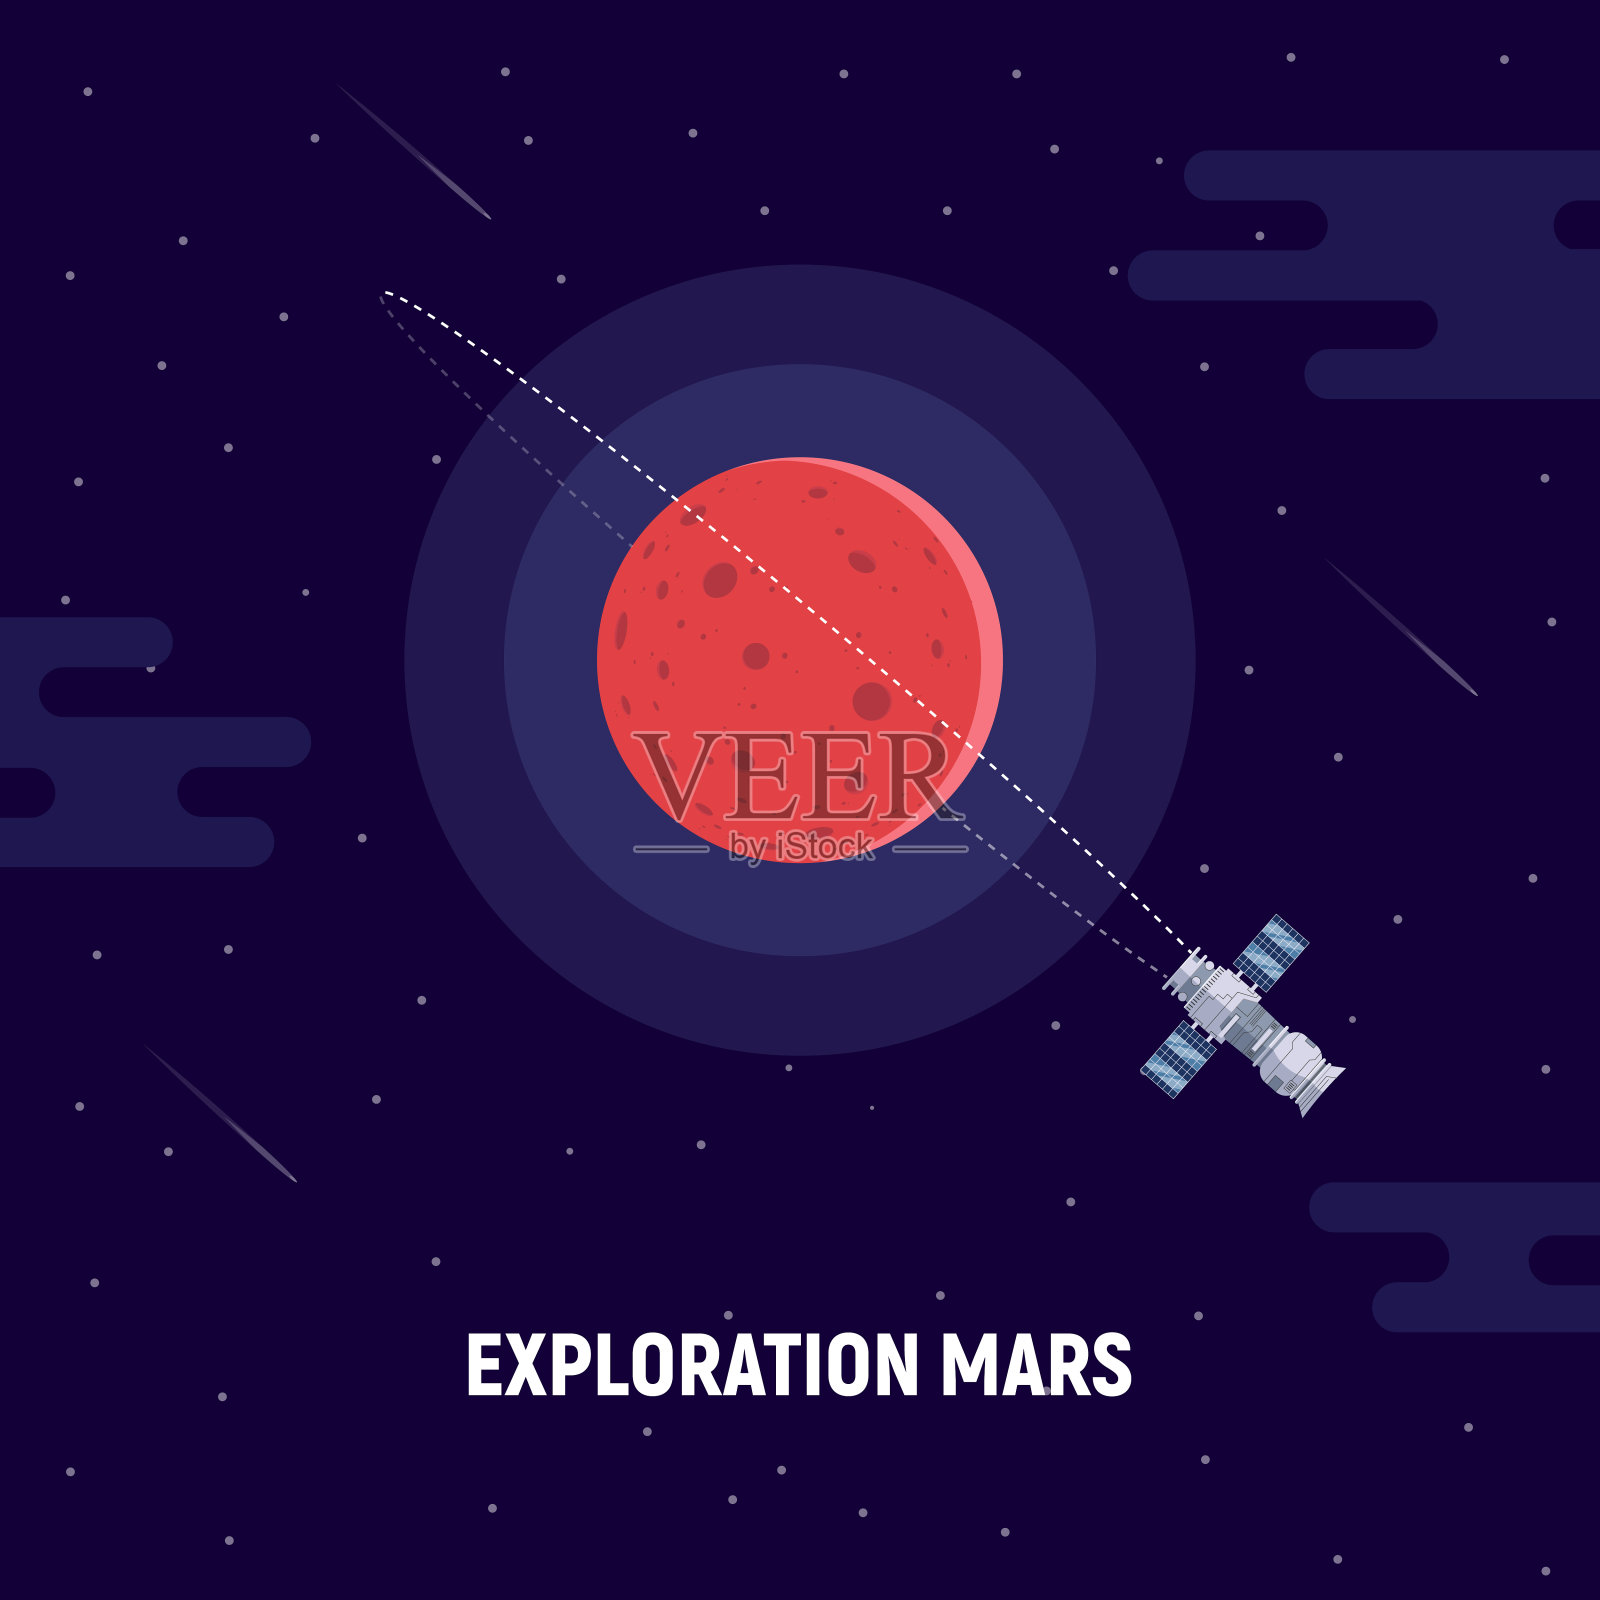 火星殖民。红色星球和卫星。火星任务的概念说明。插画图片素材